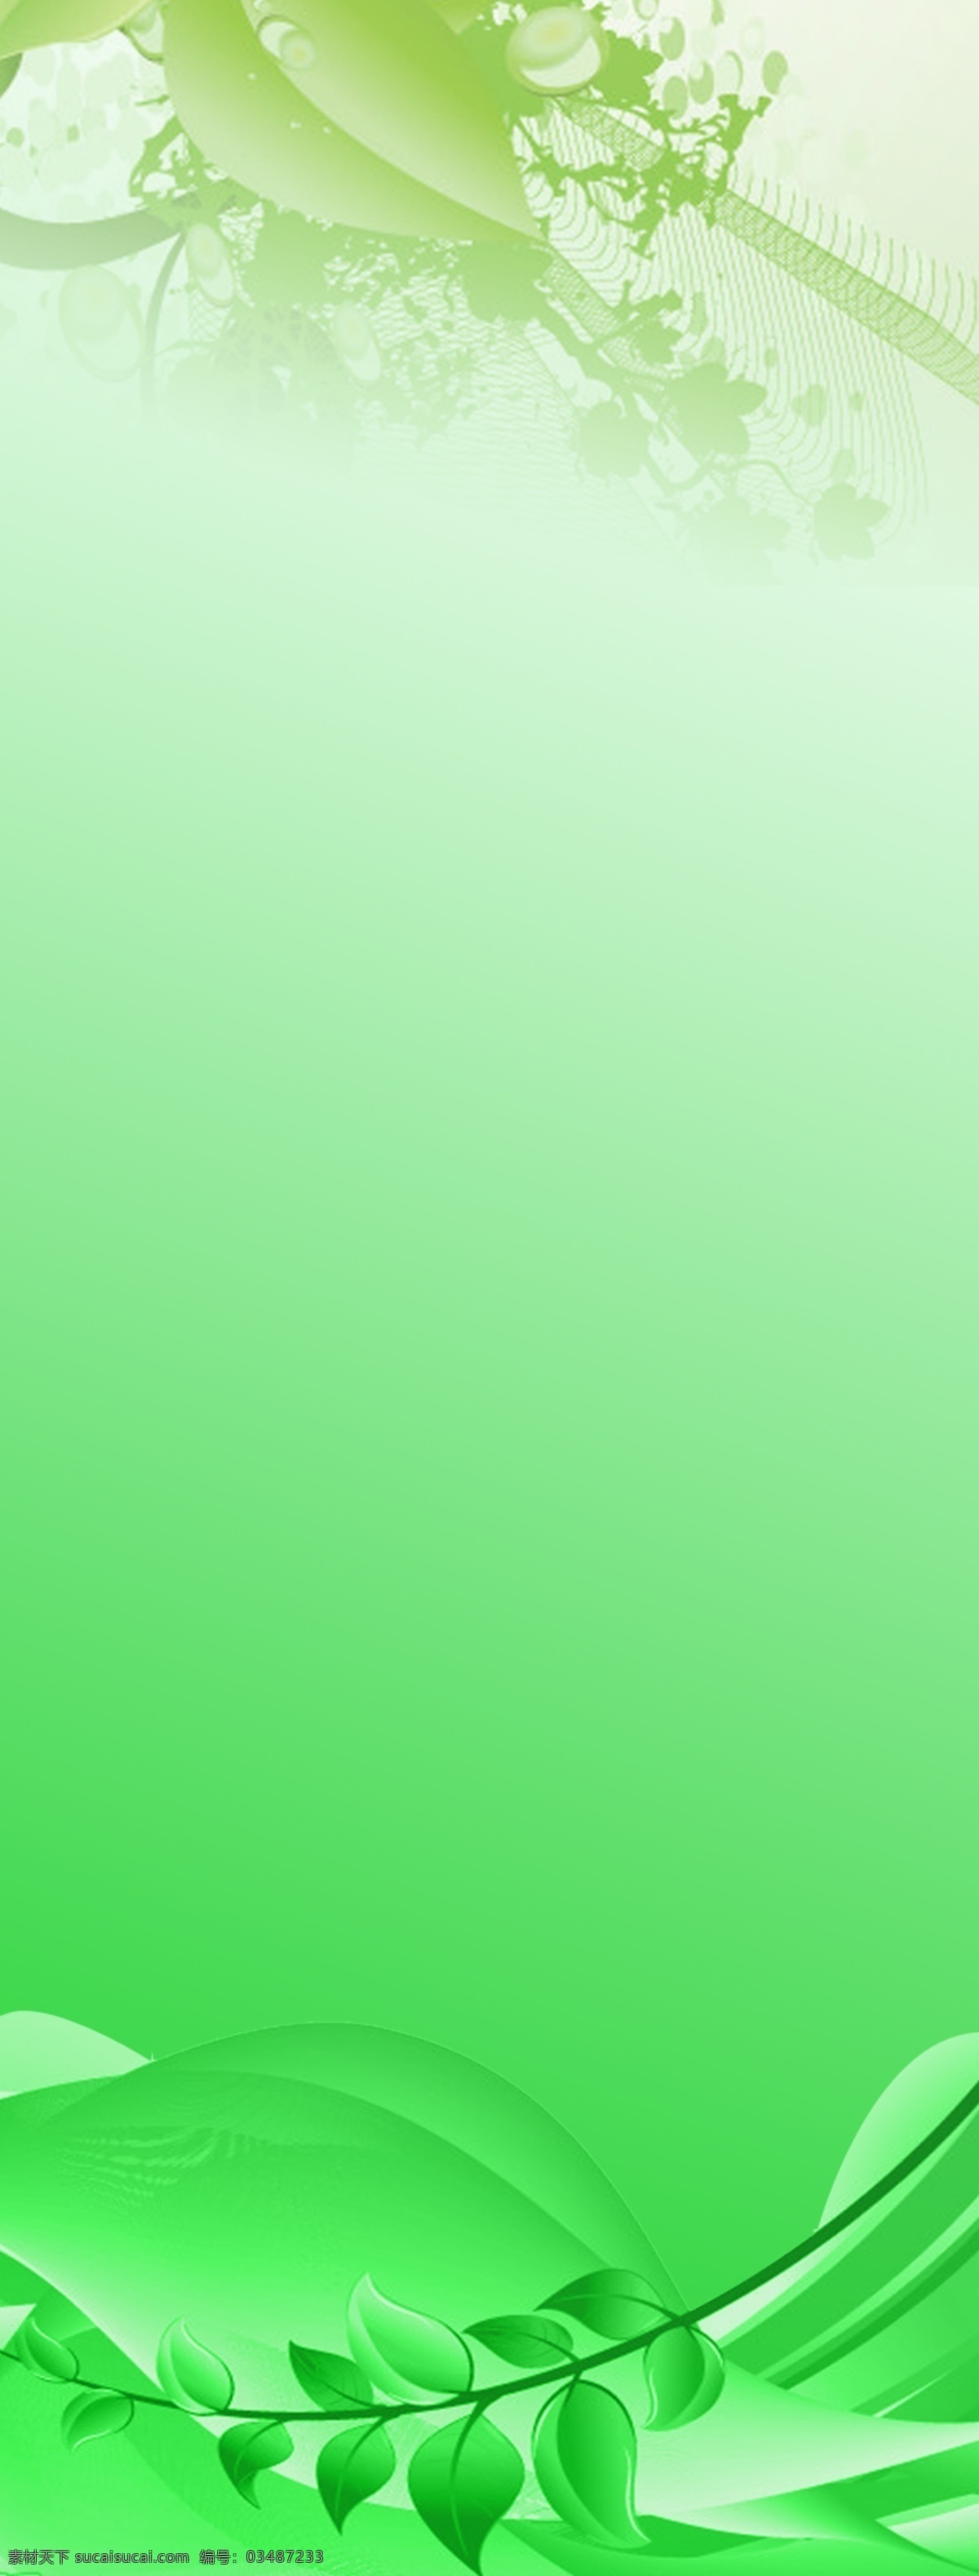 分层 x展架背景 花 绿色渐变背景 叶子 源文件 x 展架 背景 模板下载 条 条纹 叶子的颜色 背景搭配 色彩搭配素 材的选用 展板 x展板设计